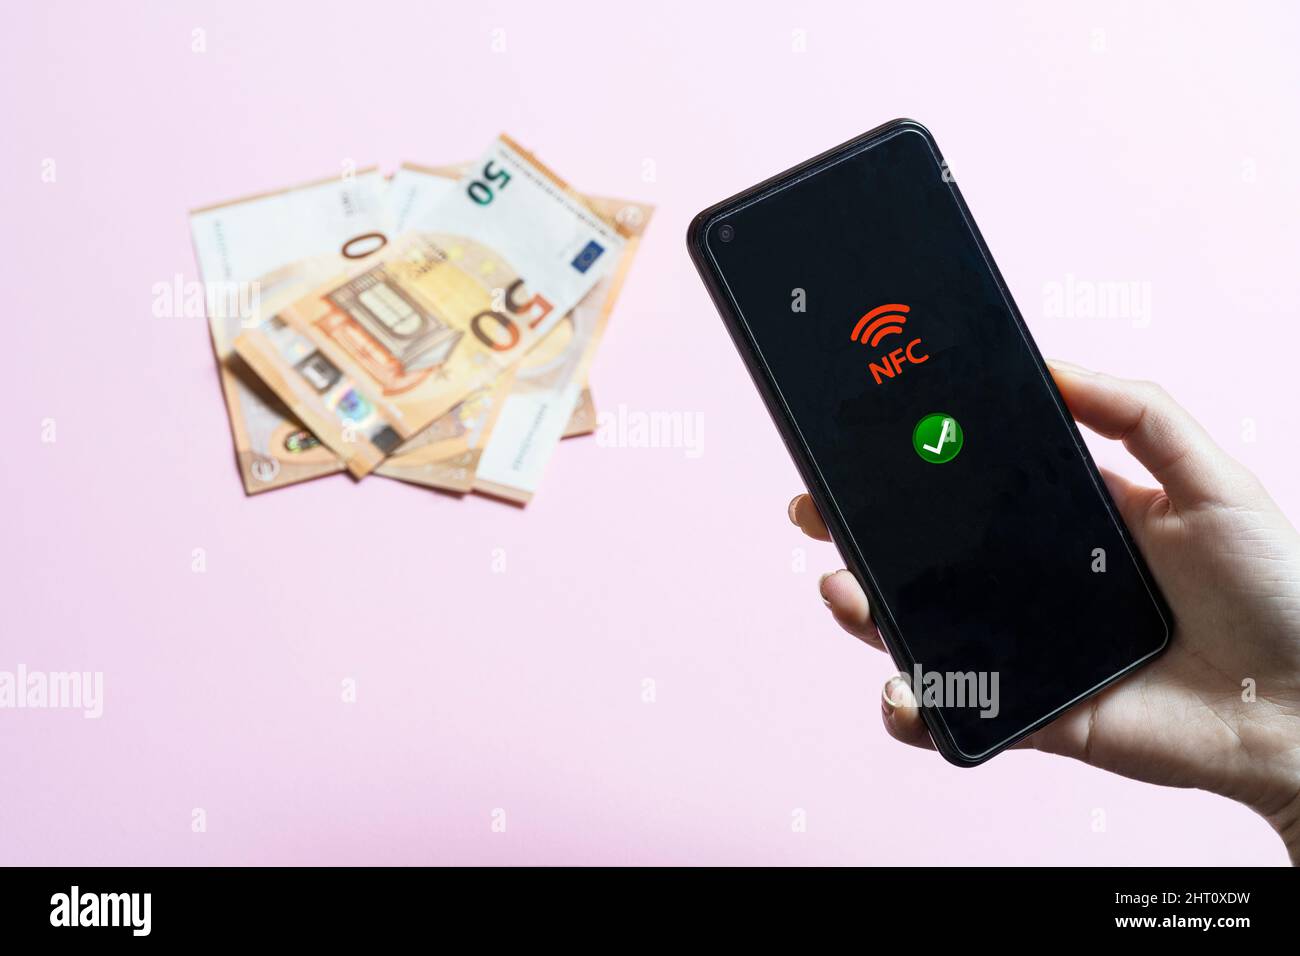 La ragazza tiene in mano un cellulare con l'icona NFC sullo schermo e alcune banconote in euro sullo sfondo Foto Stock